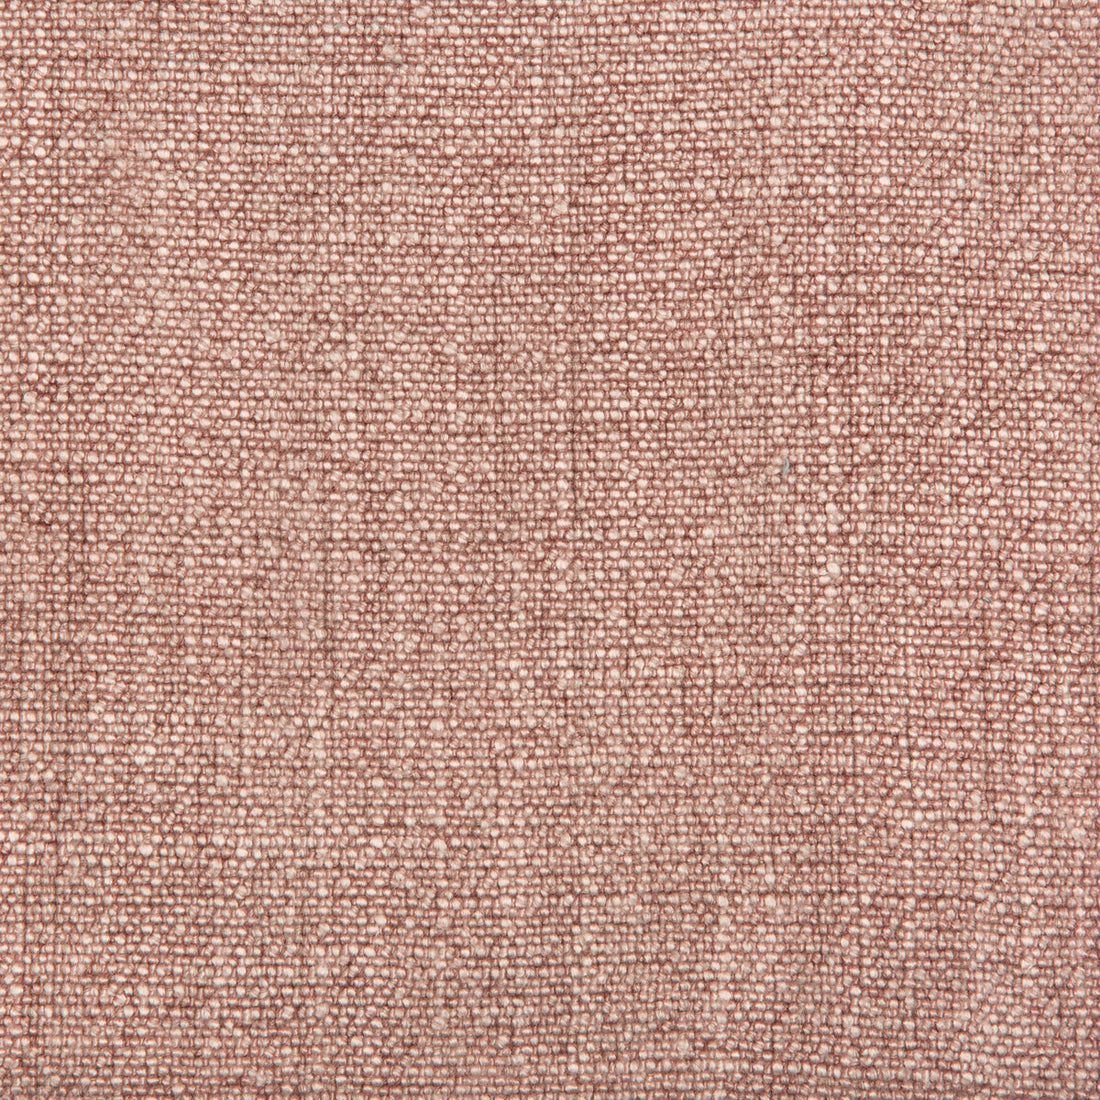 Kravet Basics fabric in 35189-17 color - pattern 35189.17.0 - by Kravet Basics